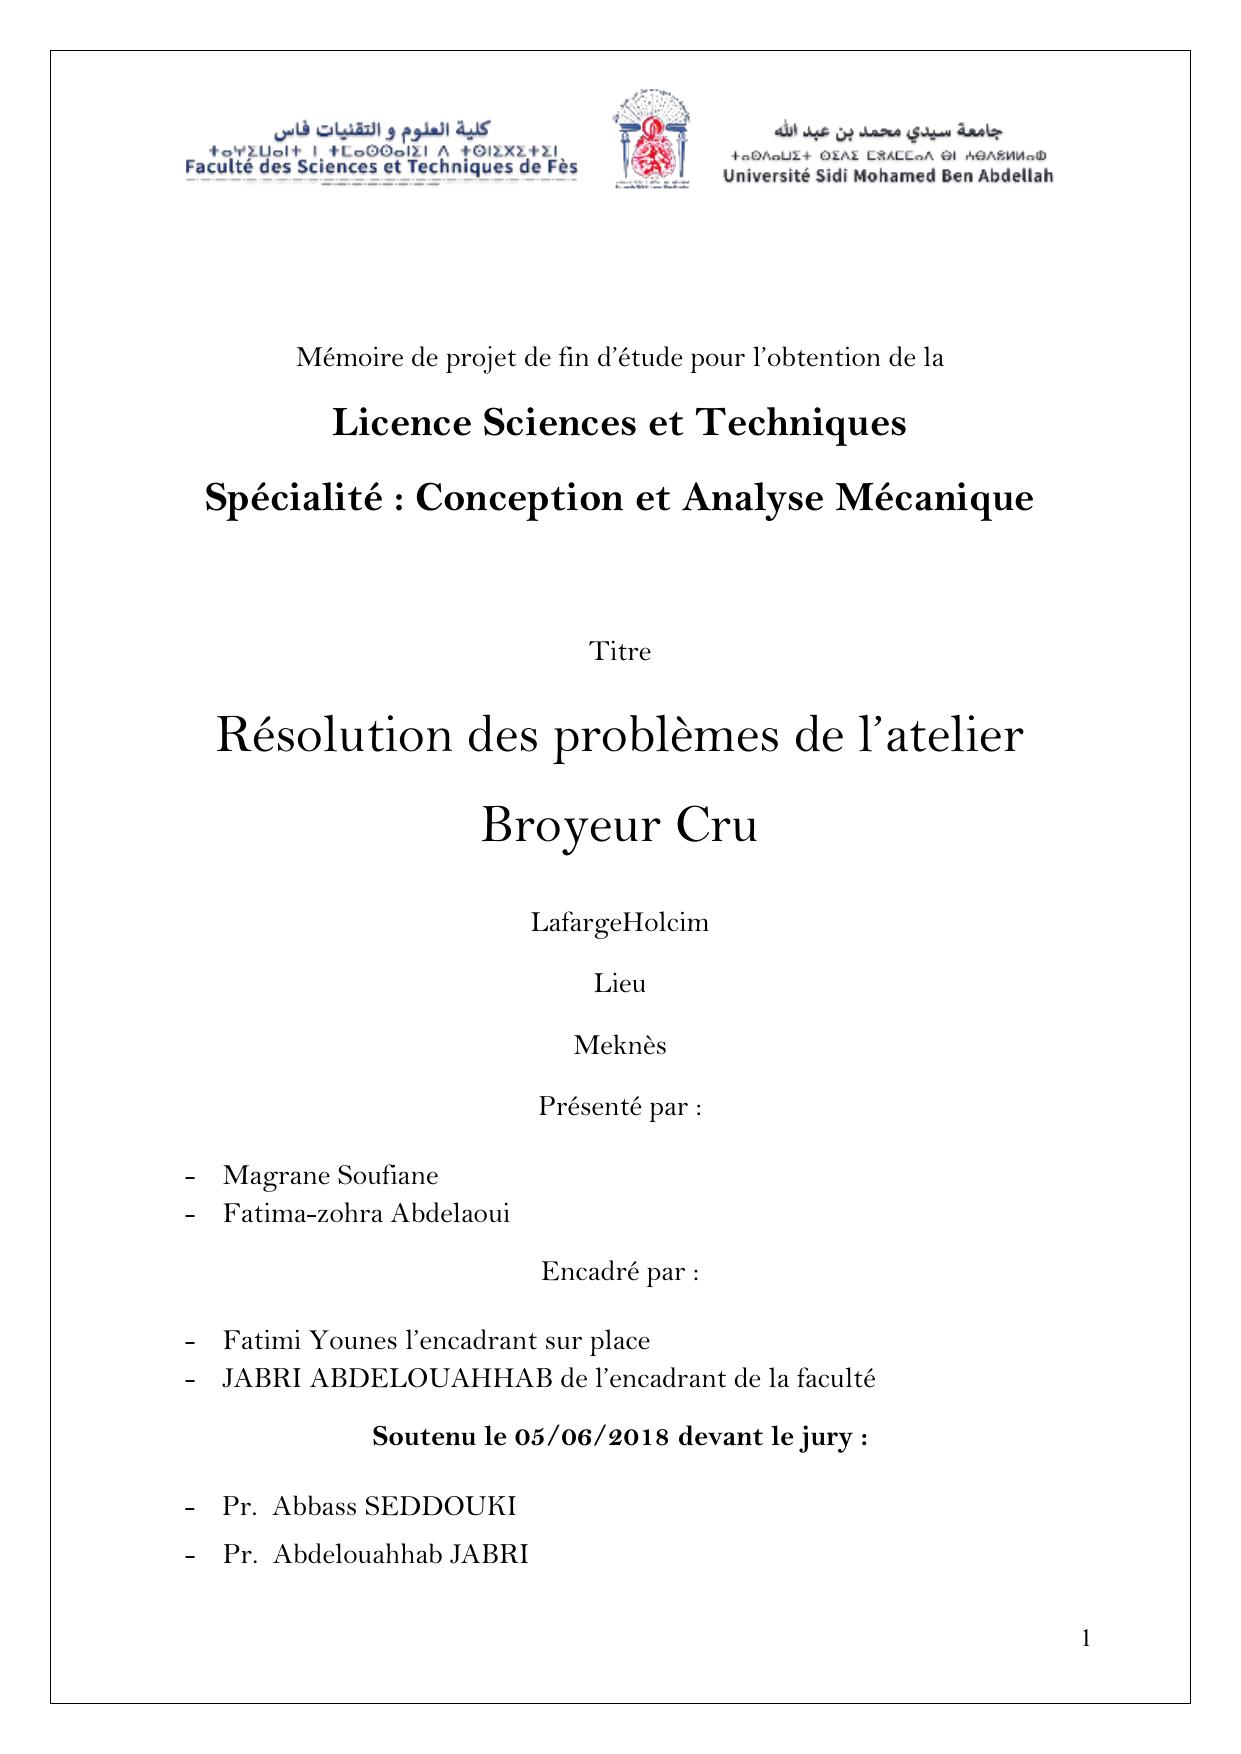 Résolution des problèmes de l’atelier Broyeur Cru